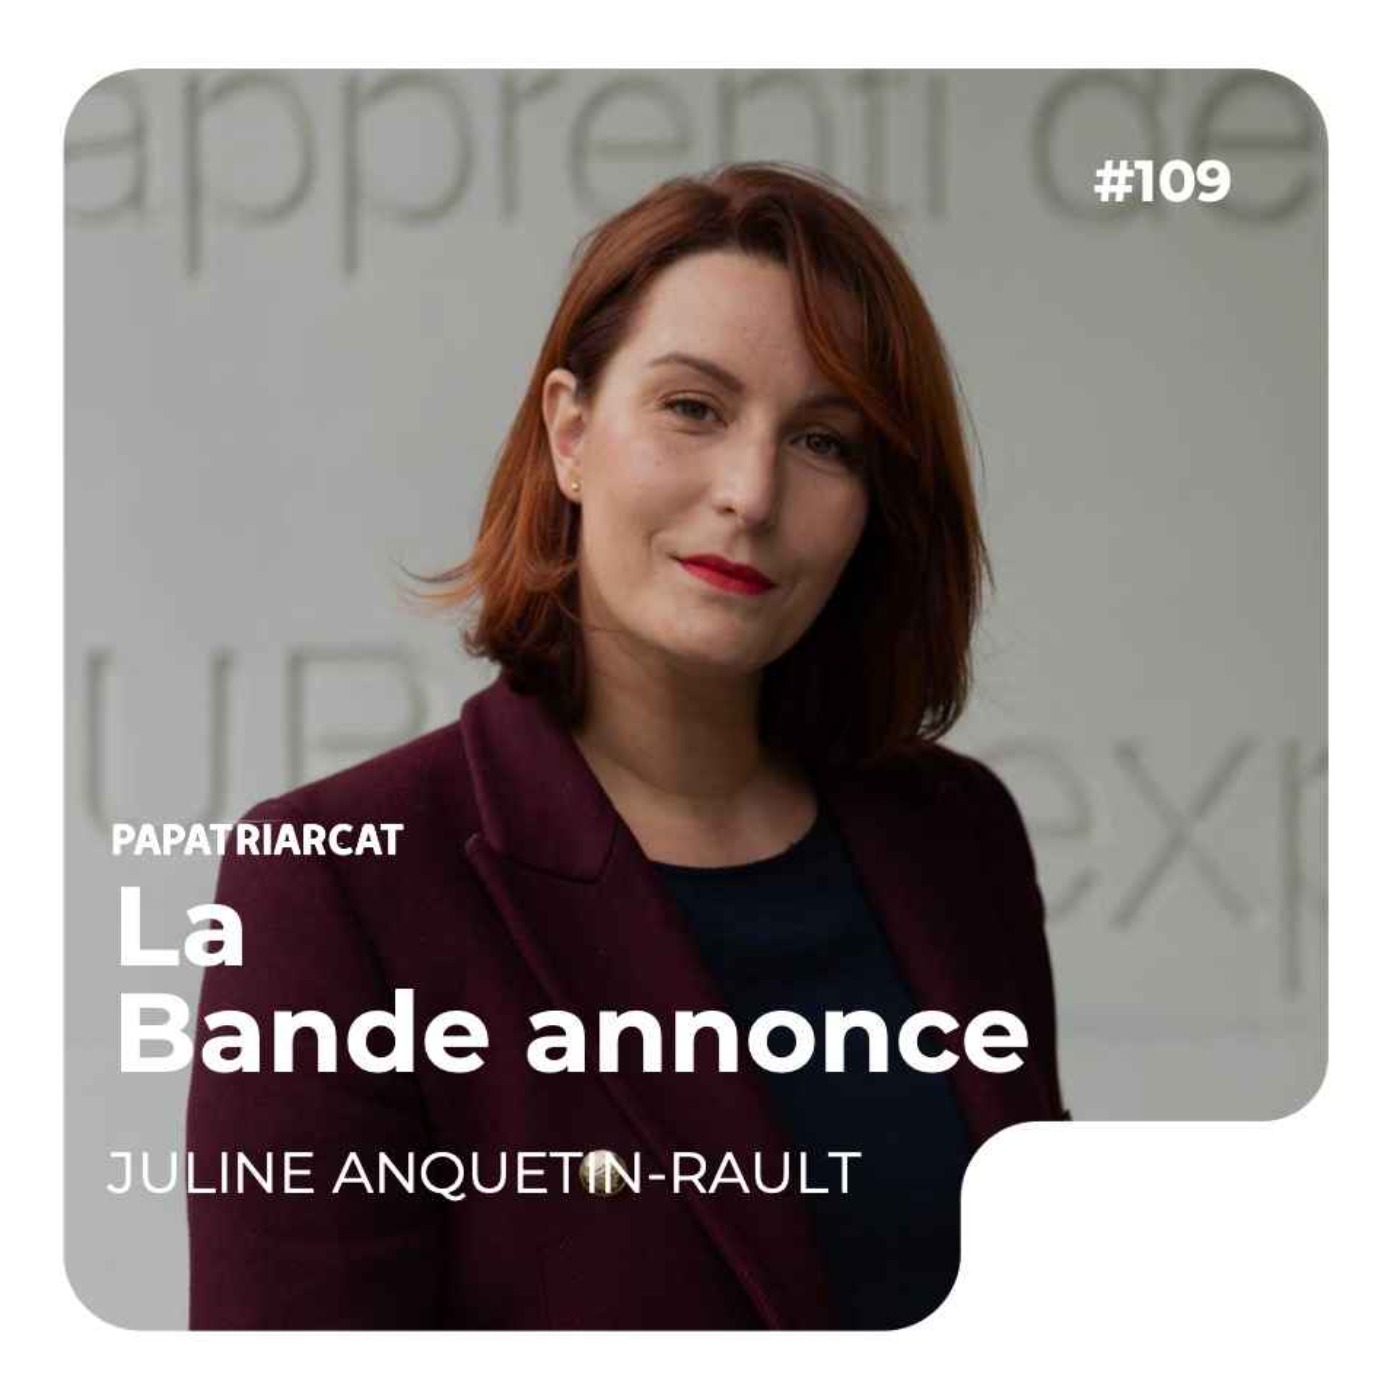 BANDE ANNONCE #109 - La classe autonome - Juline Anquetin-Rault